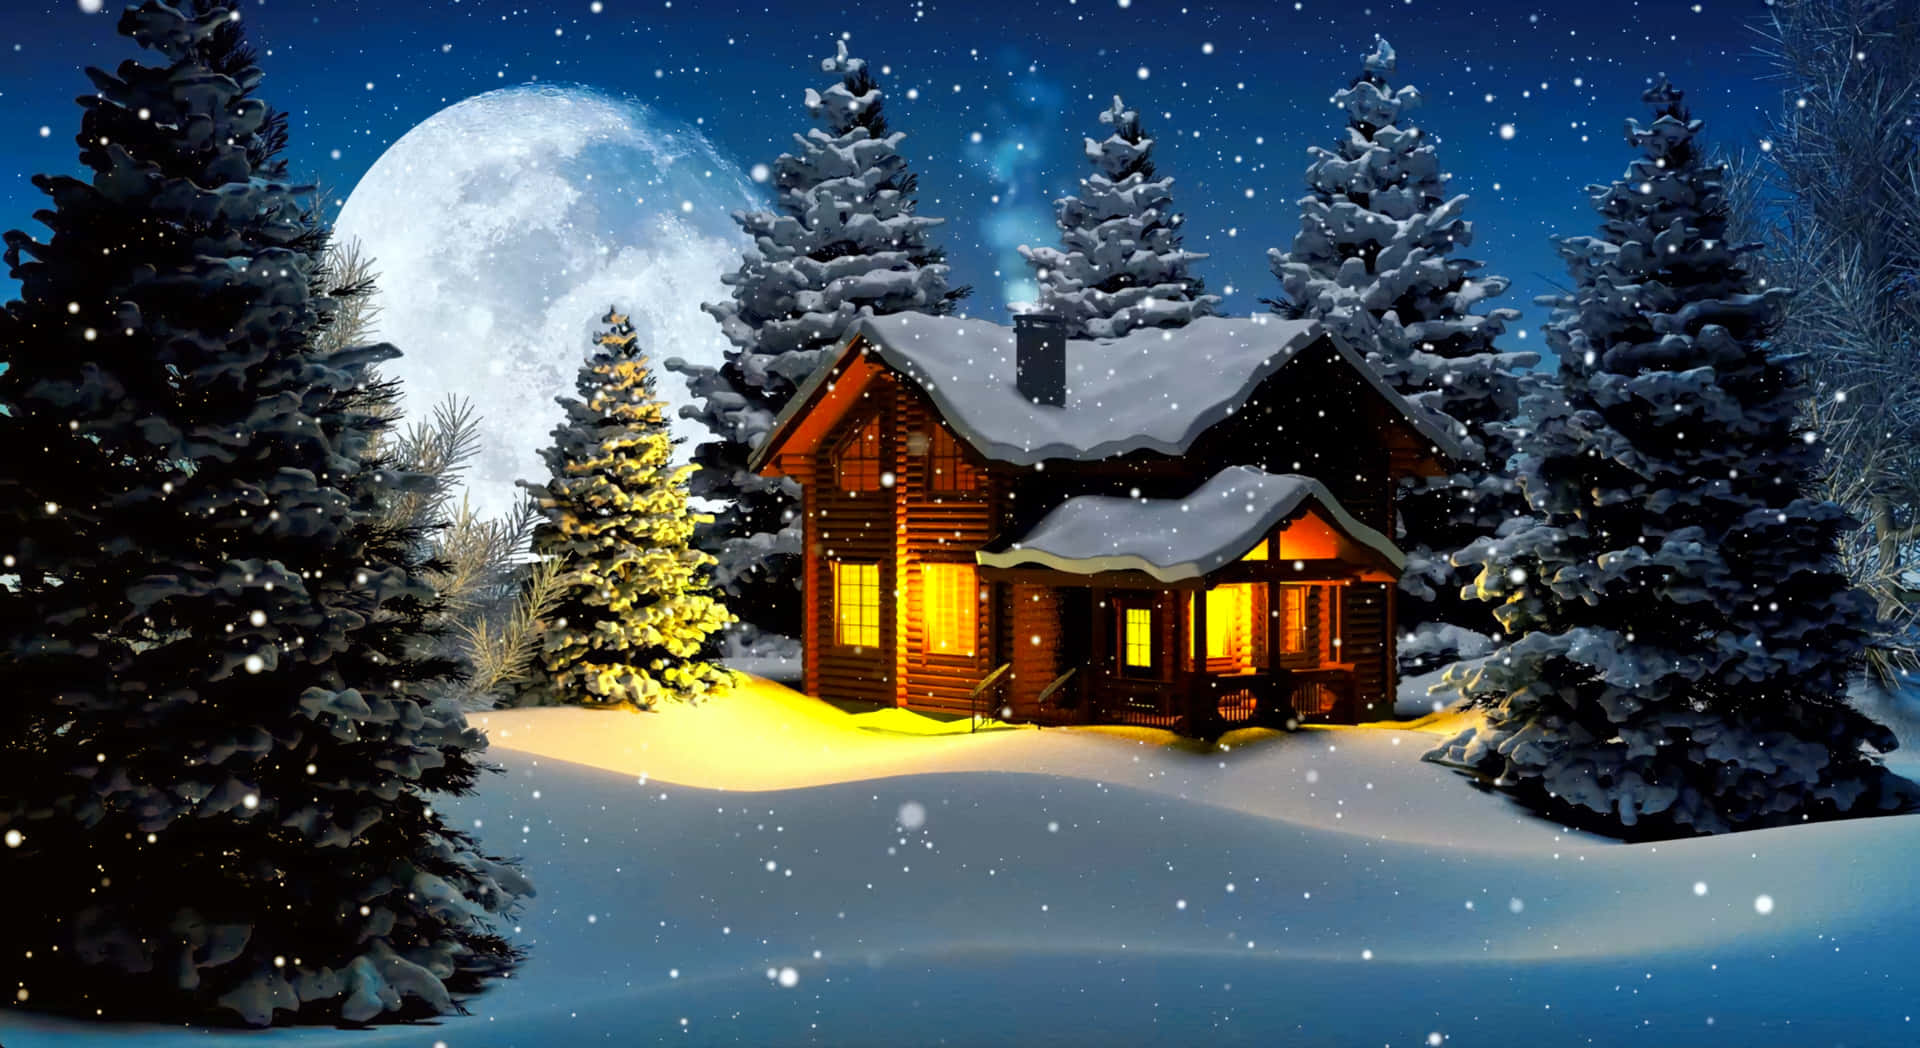 Enjoy the perfect winter Christmas desktop wallpaper Wallpaper